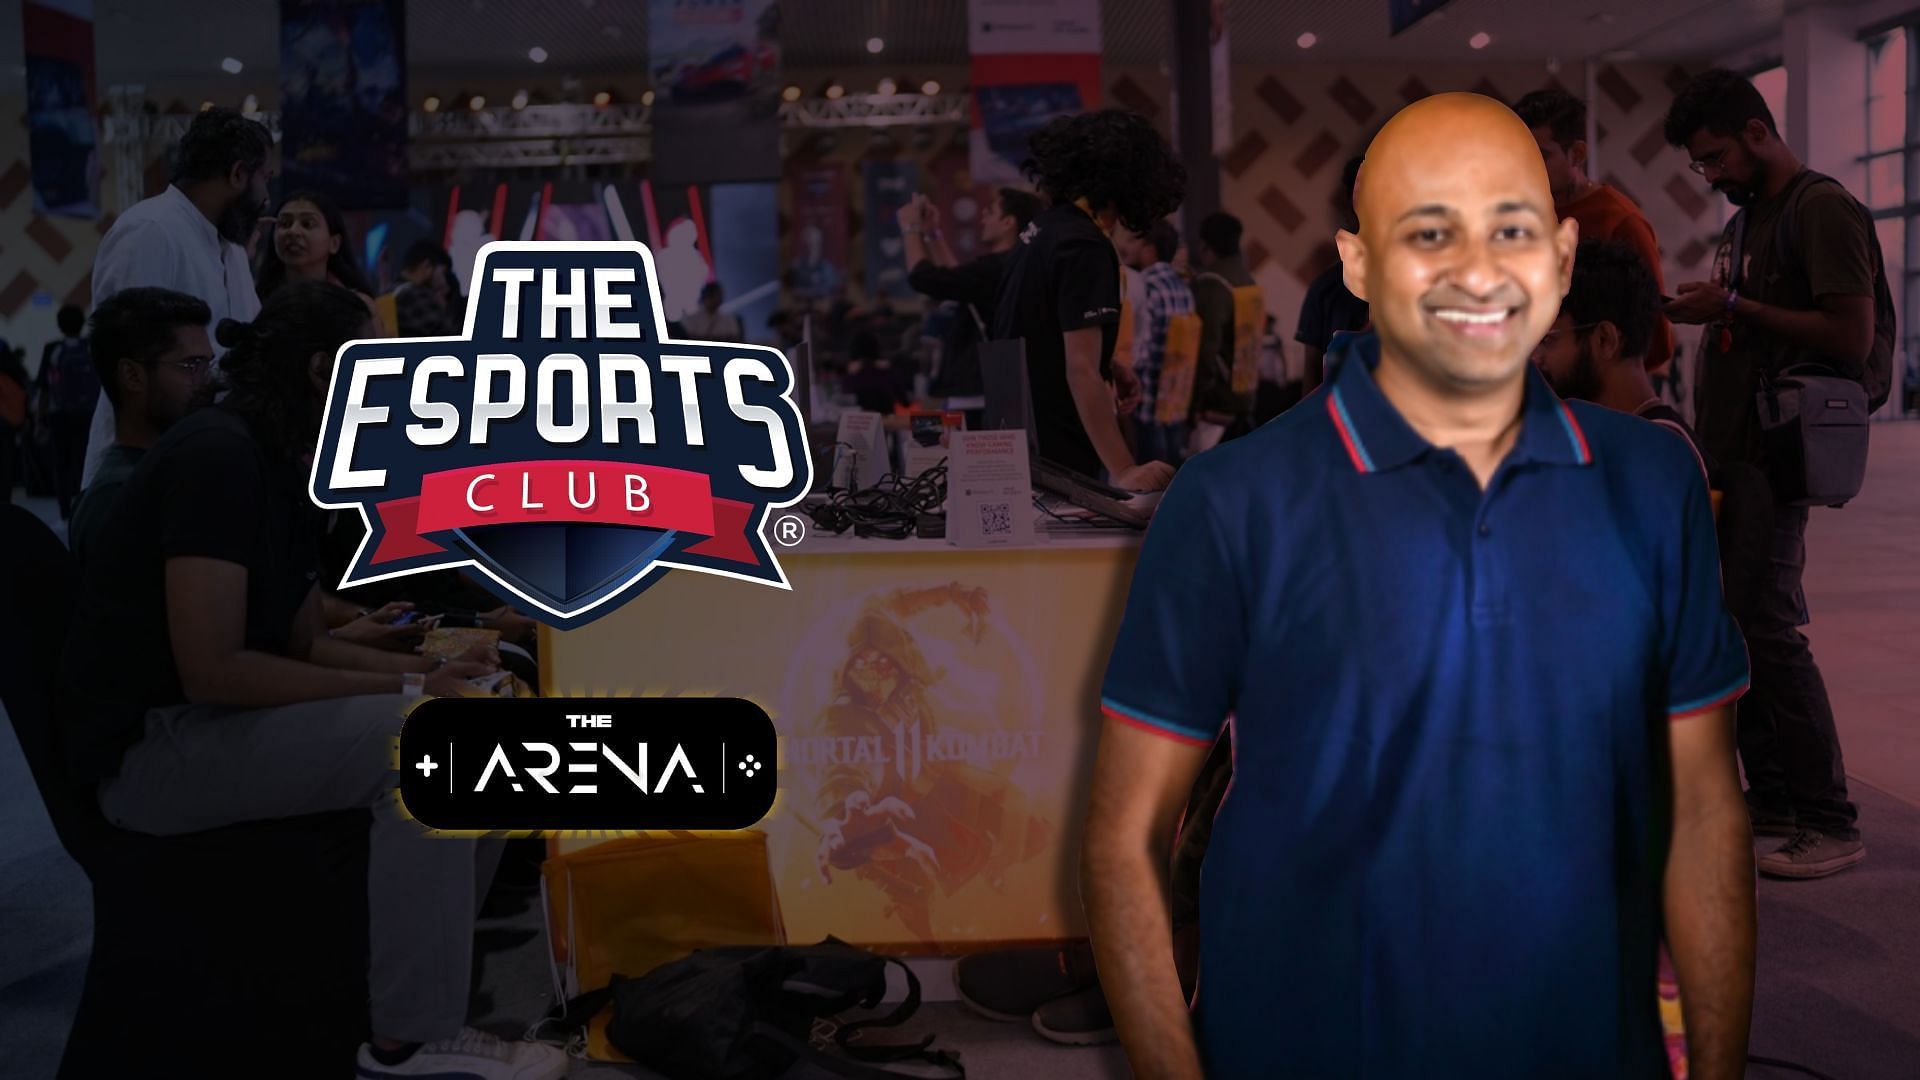 Mr. Vamsi Krishna on The Esports Club